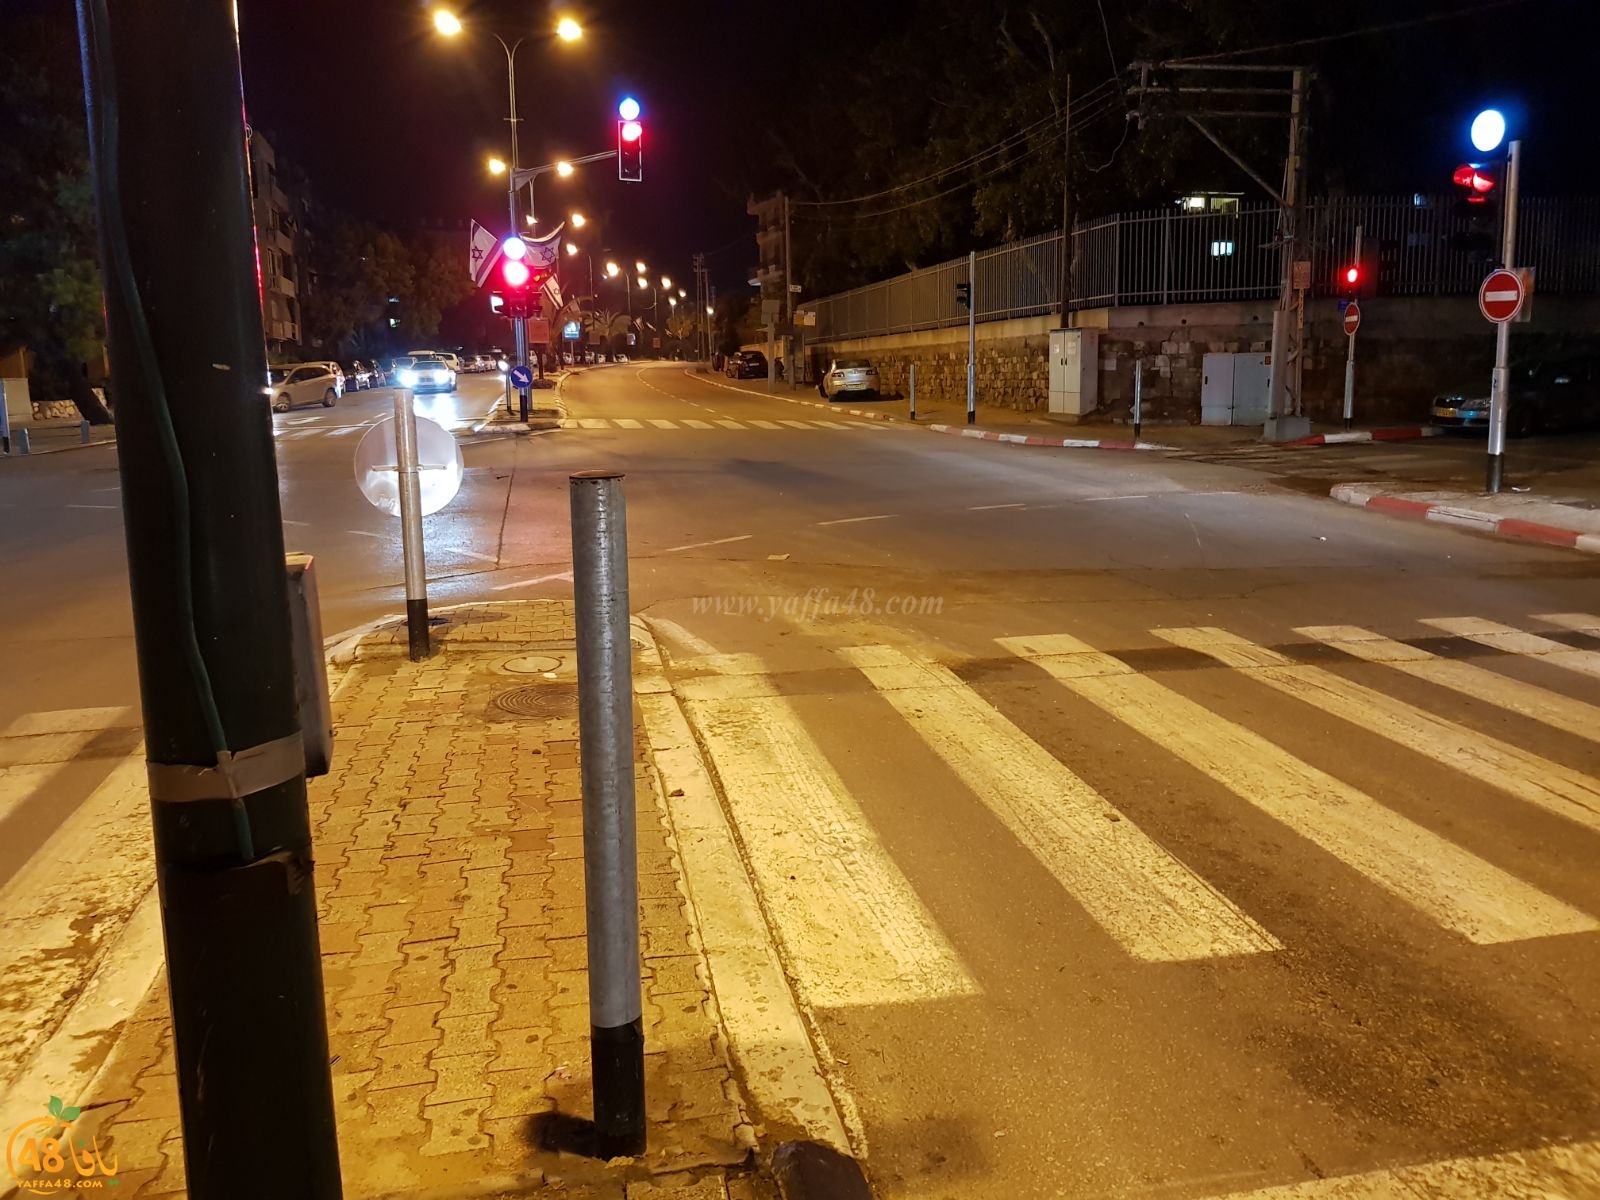  منتصف الليلة - اصابة شخص بحادث طرق بين عدة مركبات في يافا 